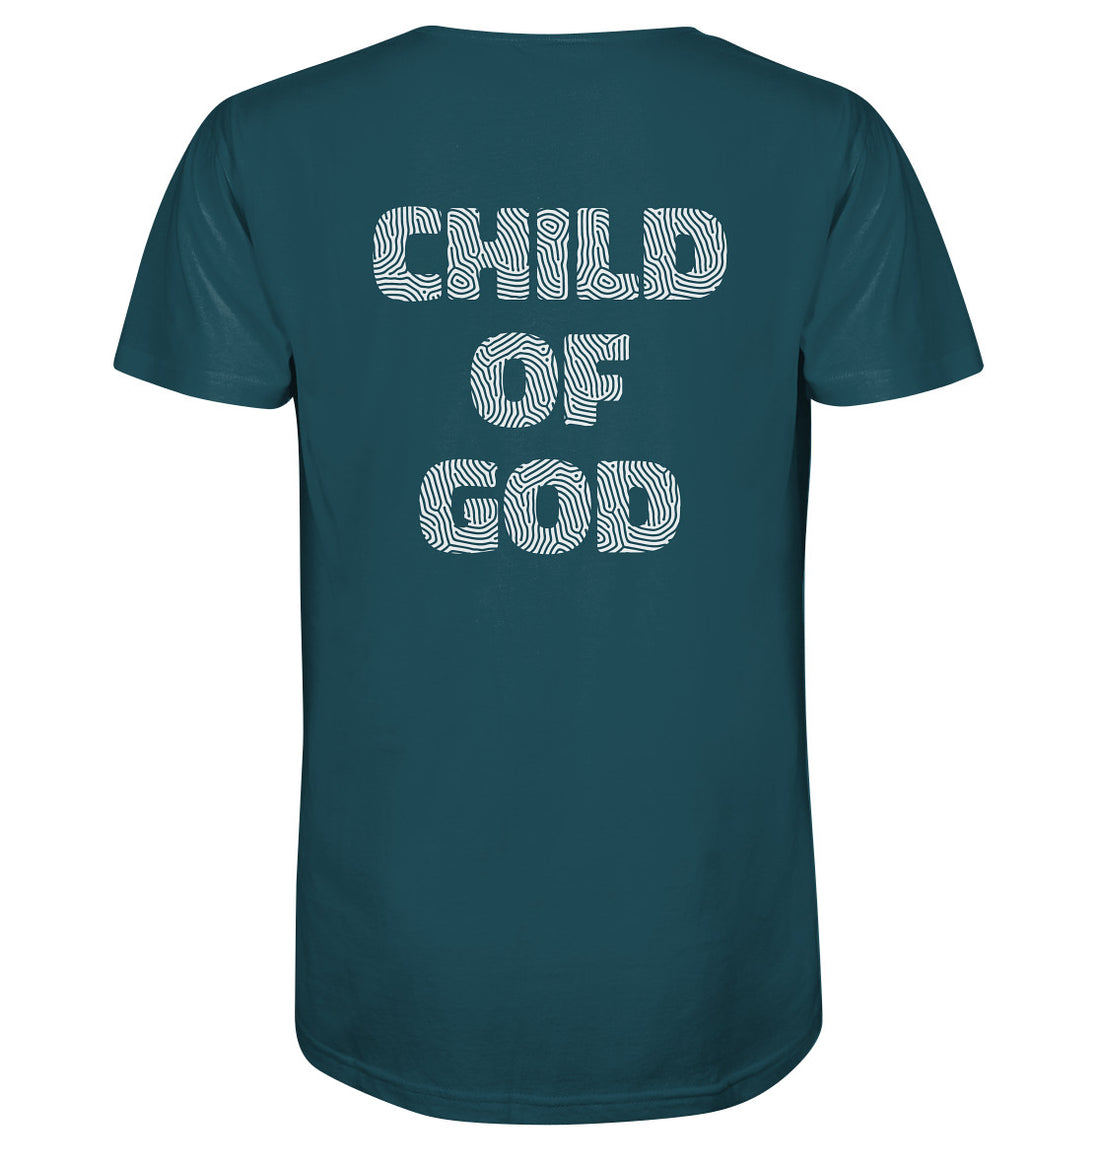 Joh 1,12 - Child of God - weißer Rückenprint - Organic Shirt